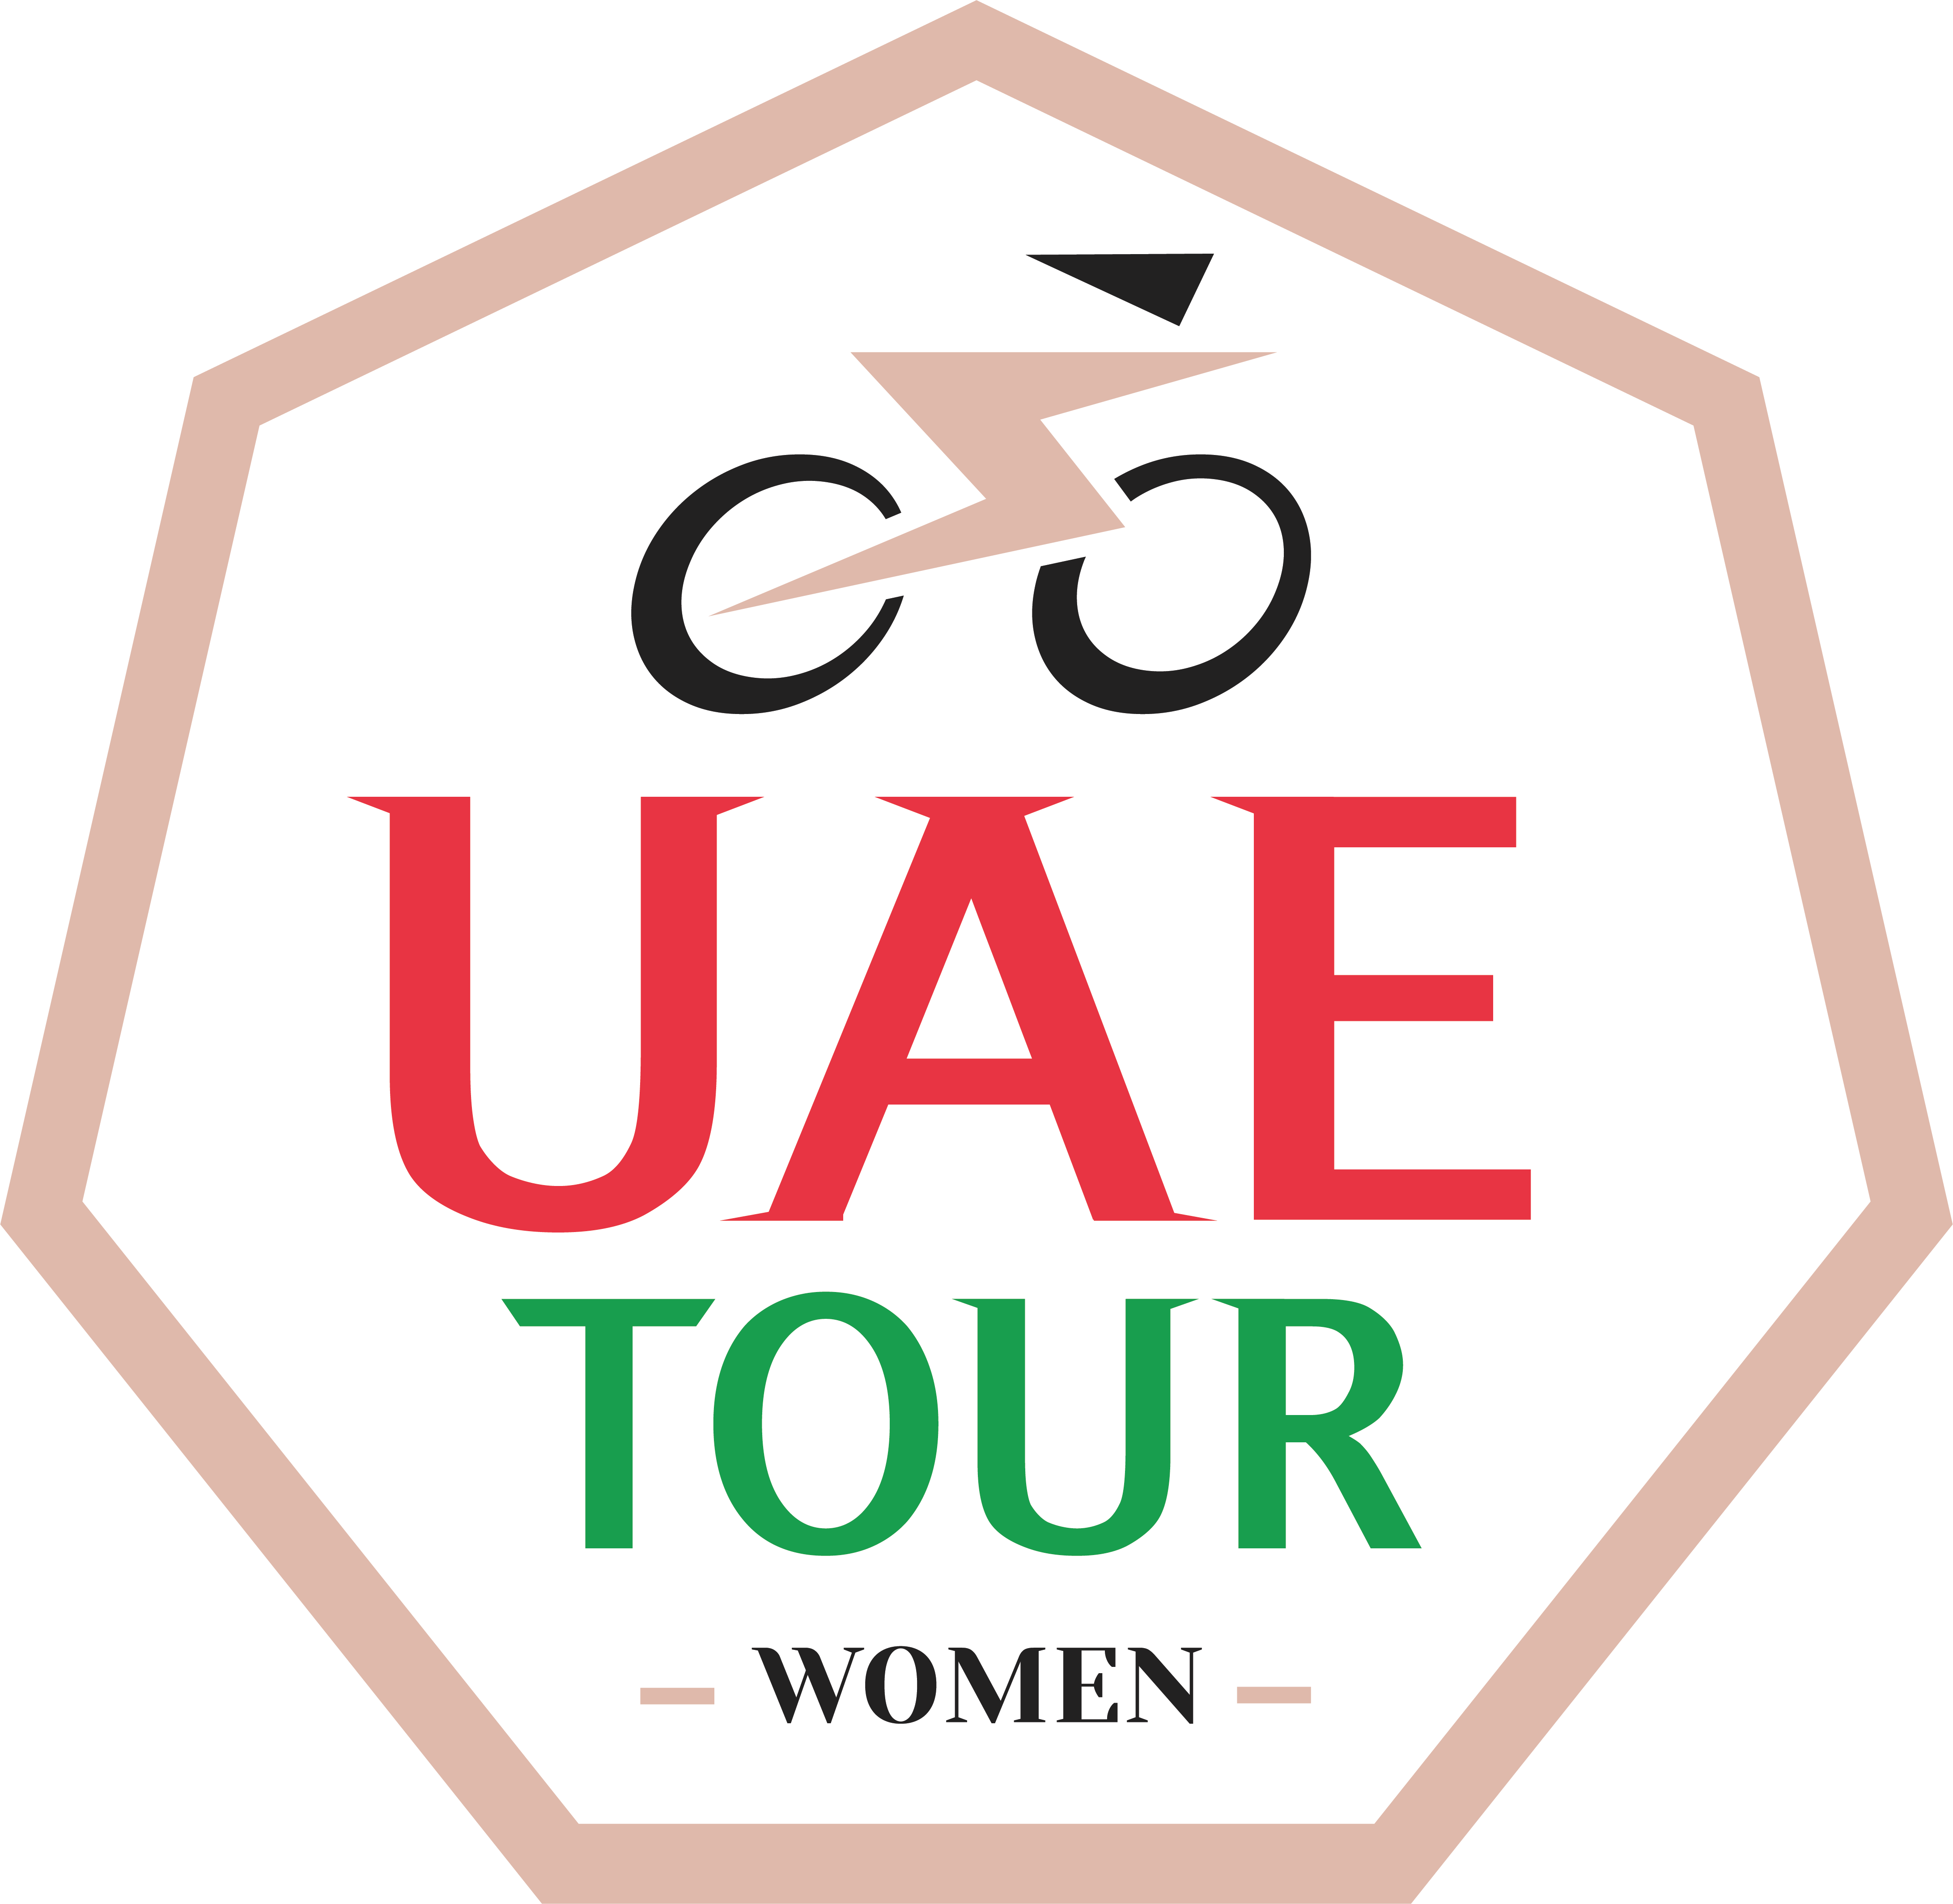 THE UAE TOUR WOMEN